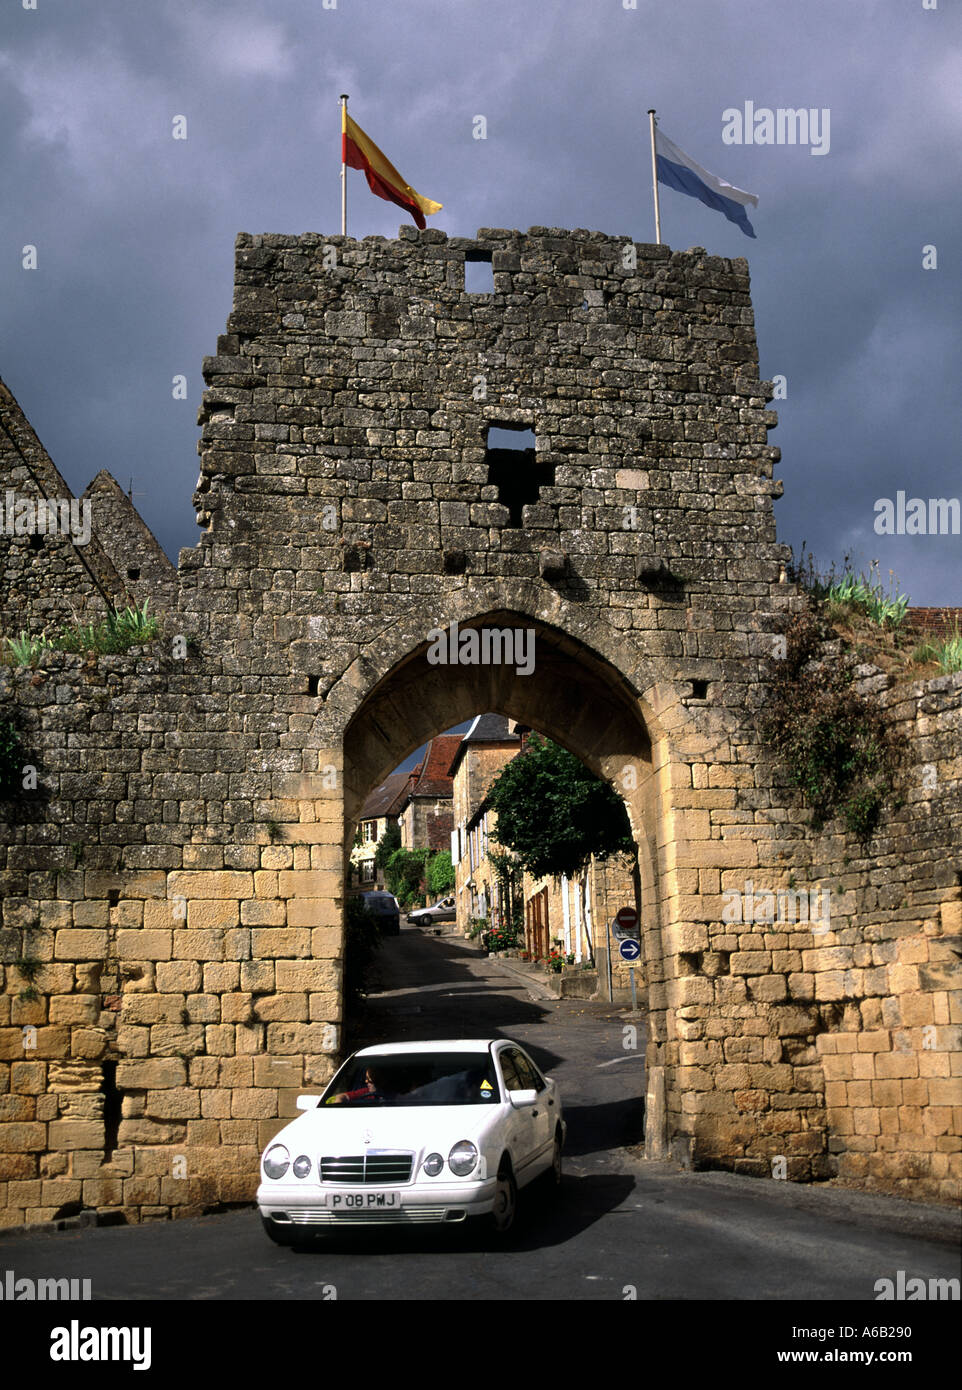 Domme Dordogne Porte Del Bos Car & Stone Gateway Bogenarchiv Straßenszene enge mittelalterliche Straßenflaggen an der historischen Stadtmauer Nouvelle Aquitaine Frankreich Stockfoto